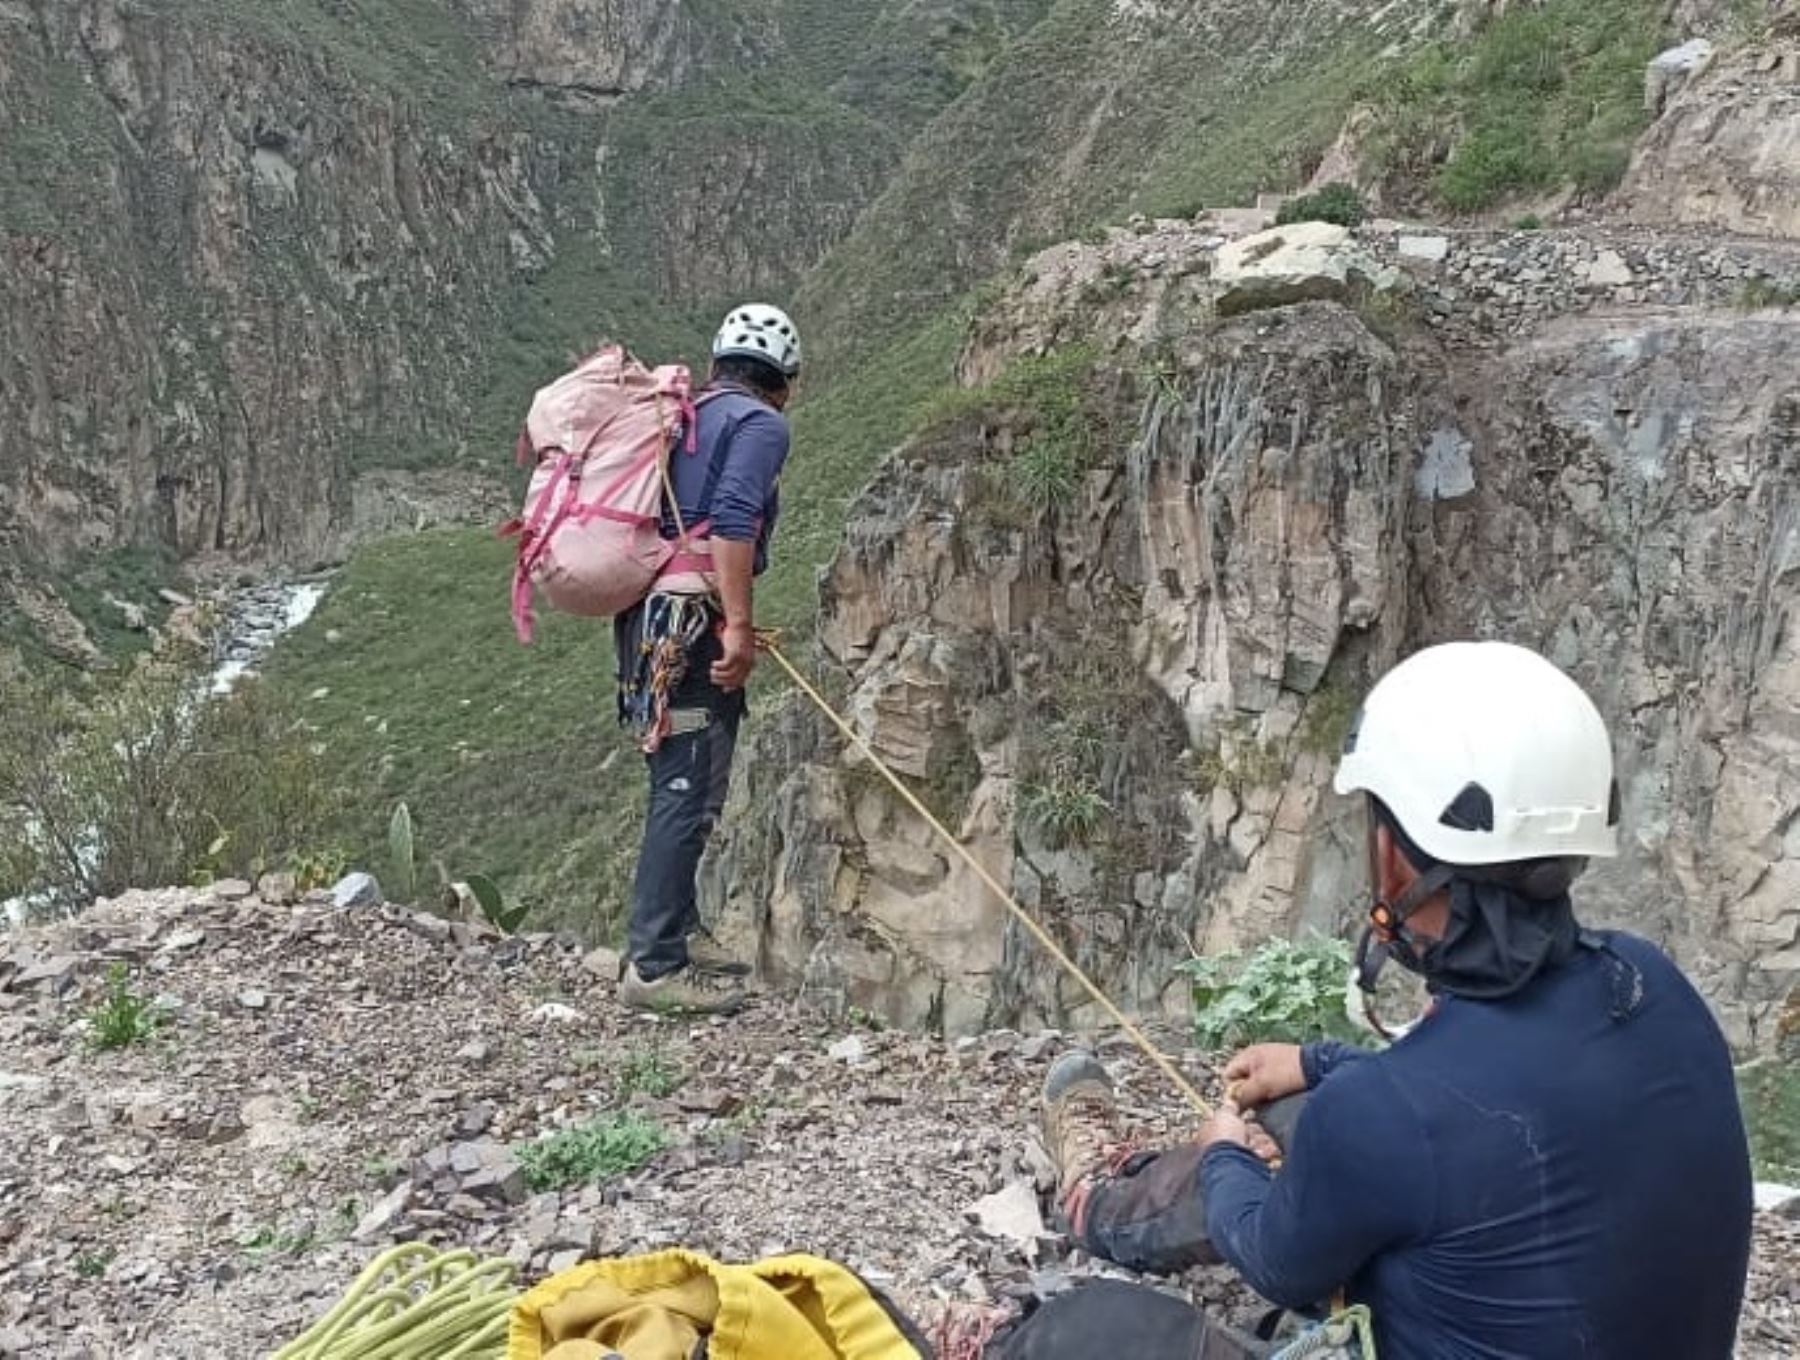 Seis equipos de rescate participan de las labores de búsqueda de Natasha de Crombrugghe, la turista belga quien se encuentra desaparecida en el valle de Colca desde el 23 de enero. ANDINA/Difusión